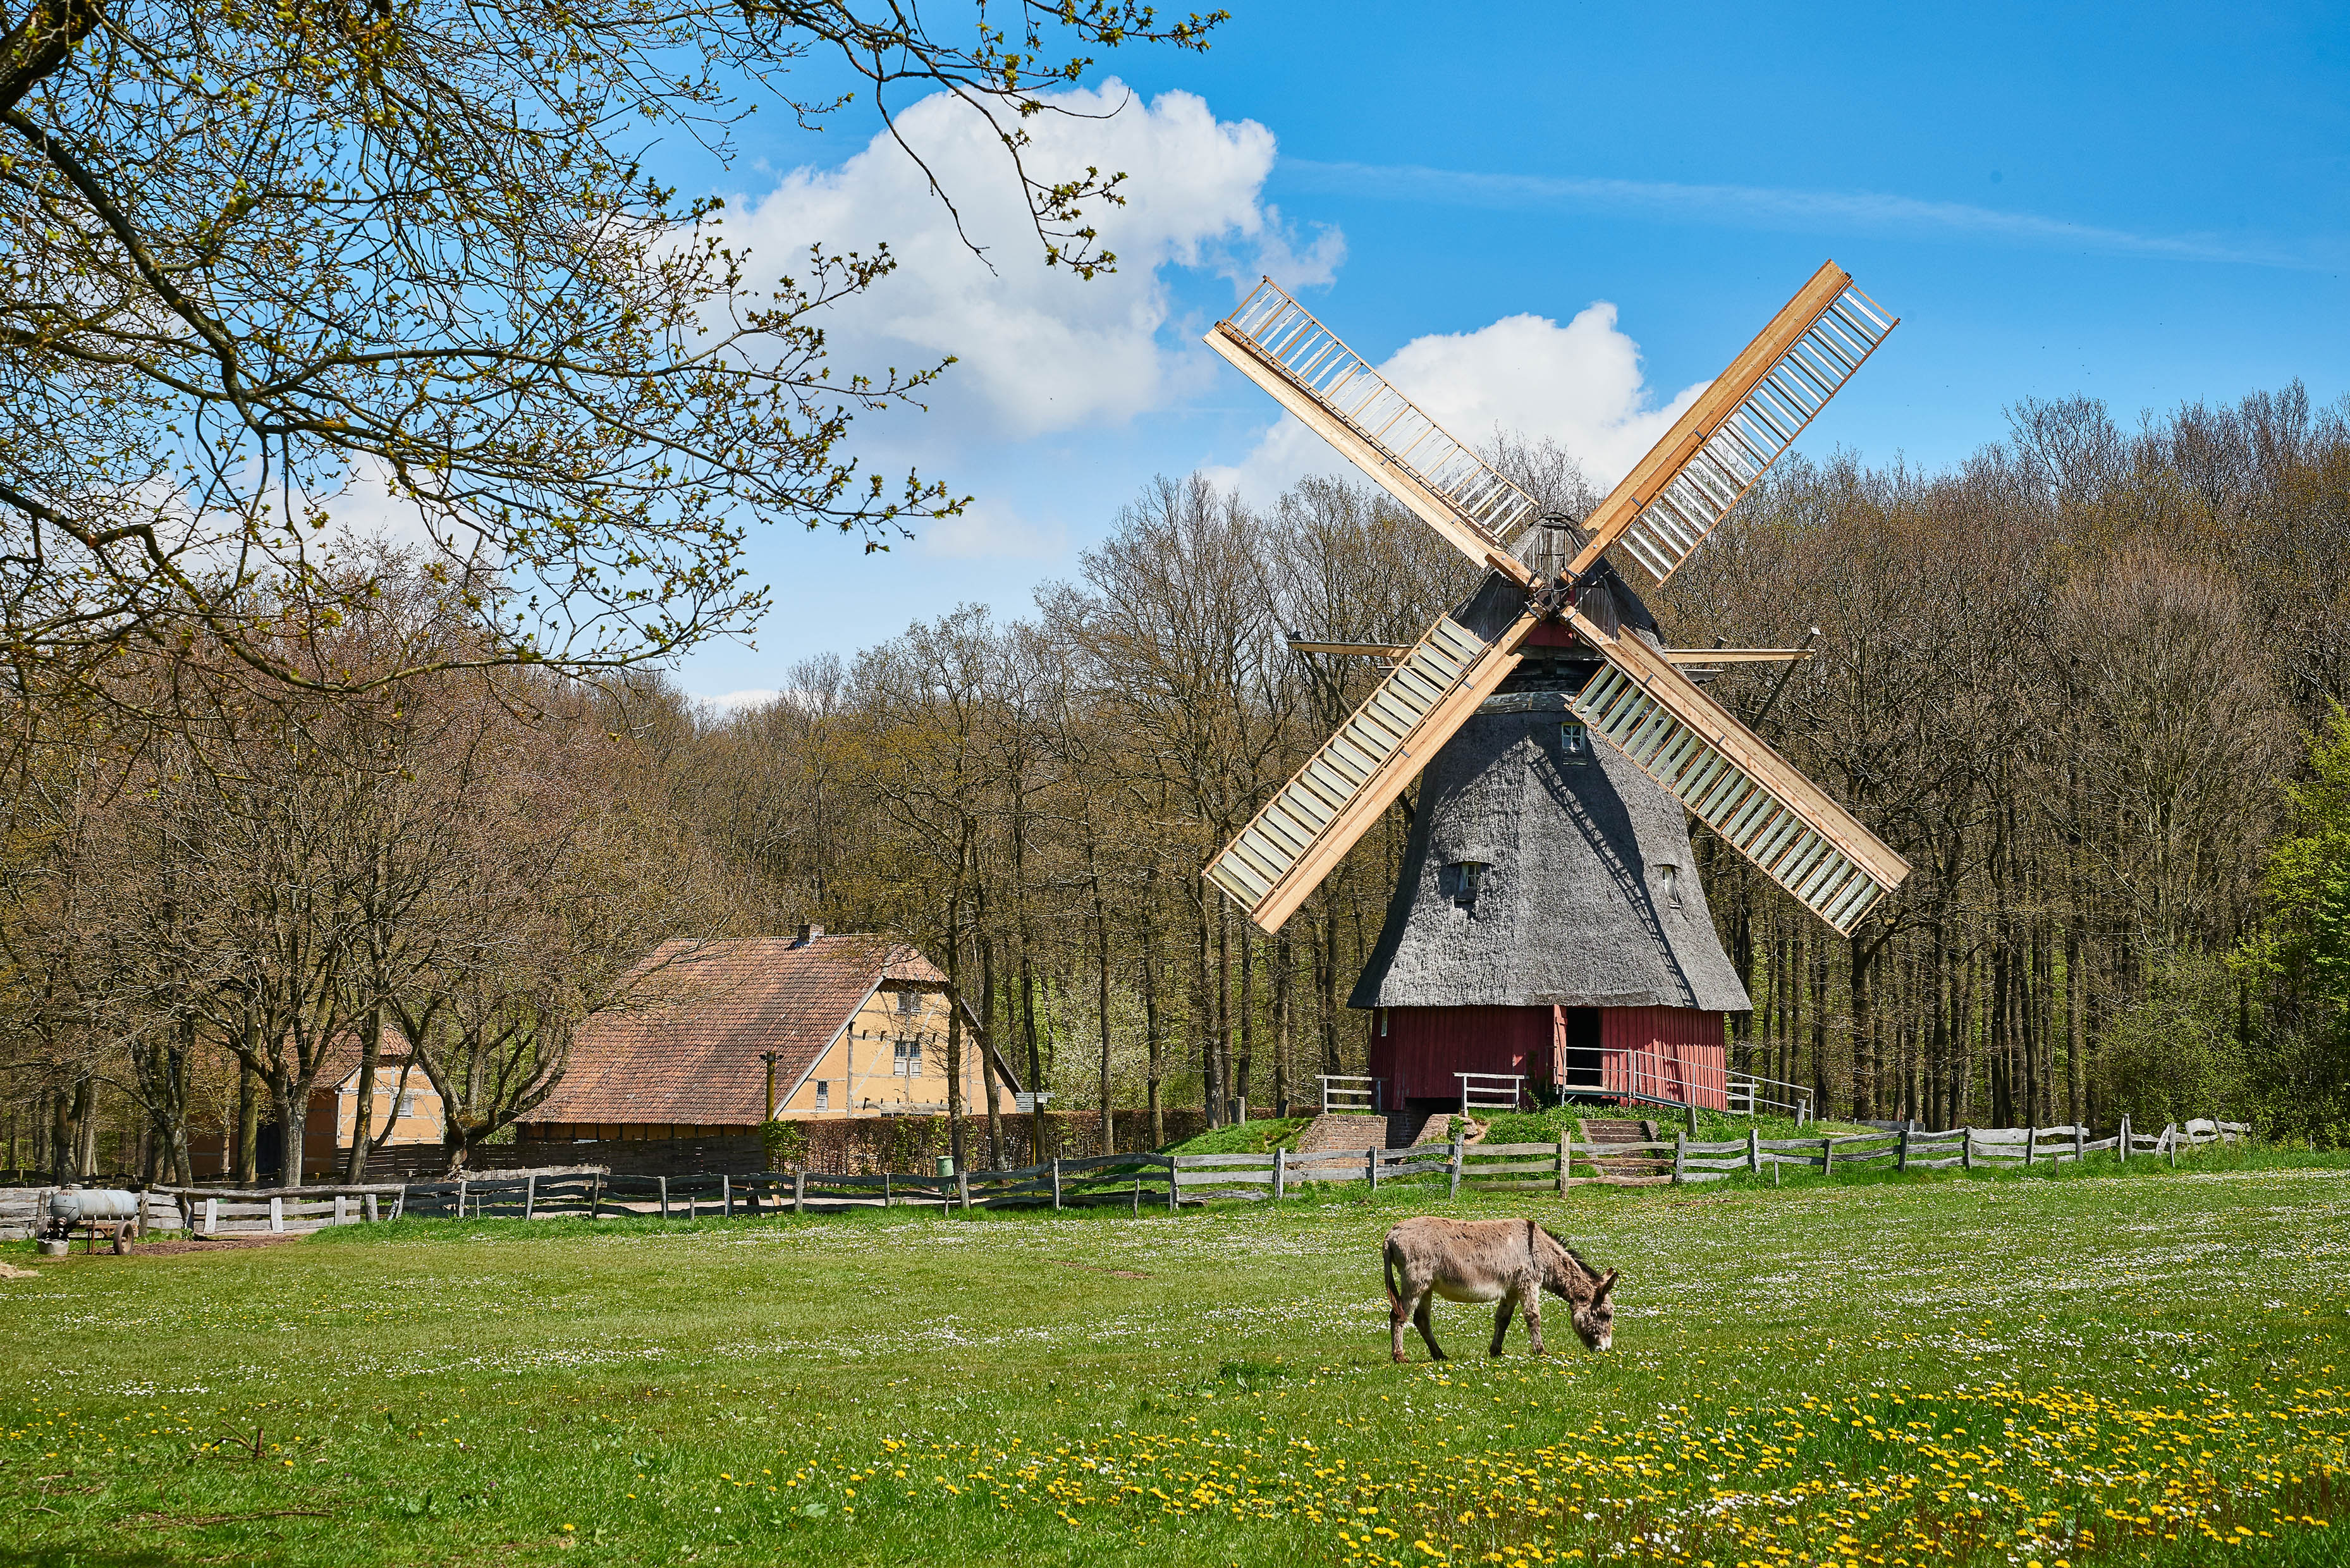 Auf einer Wiese steht ein Esel, im Hintergrund sieht man eine Windmühle